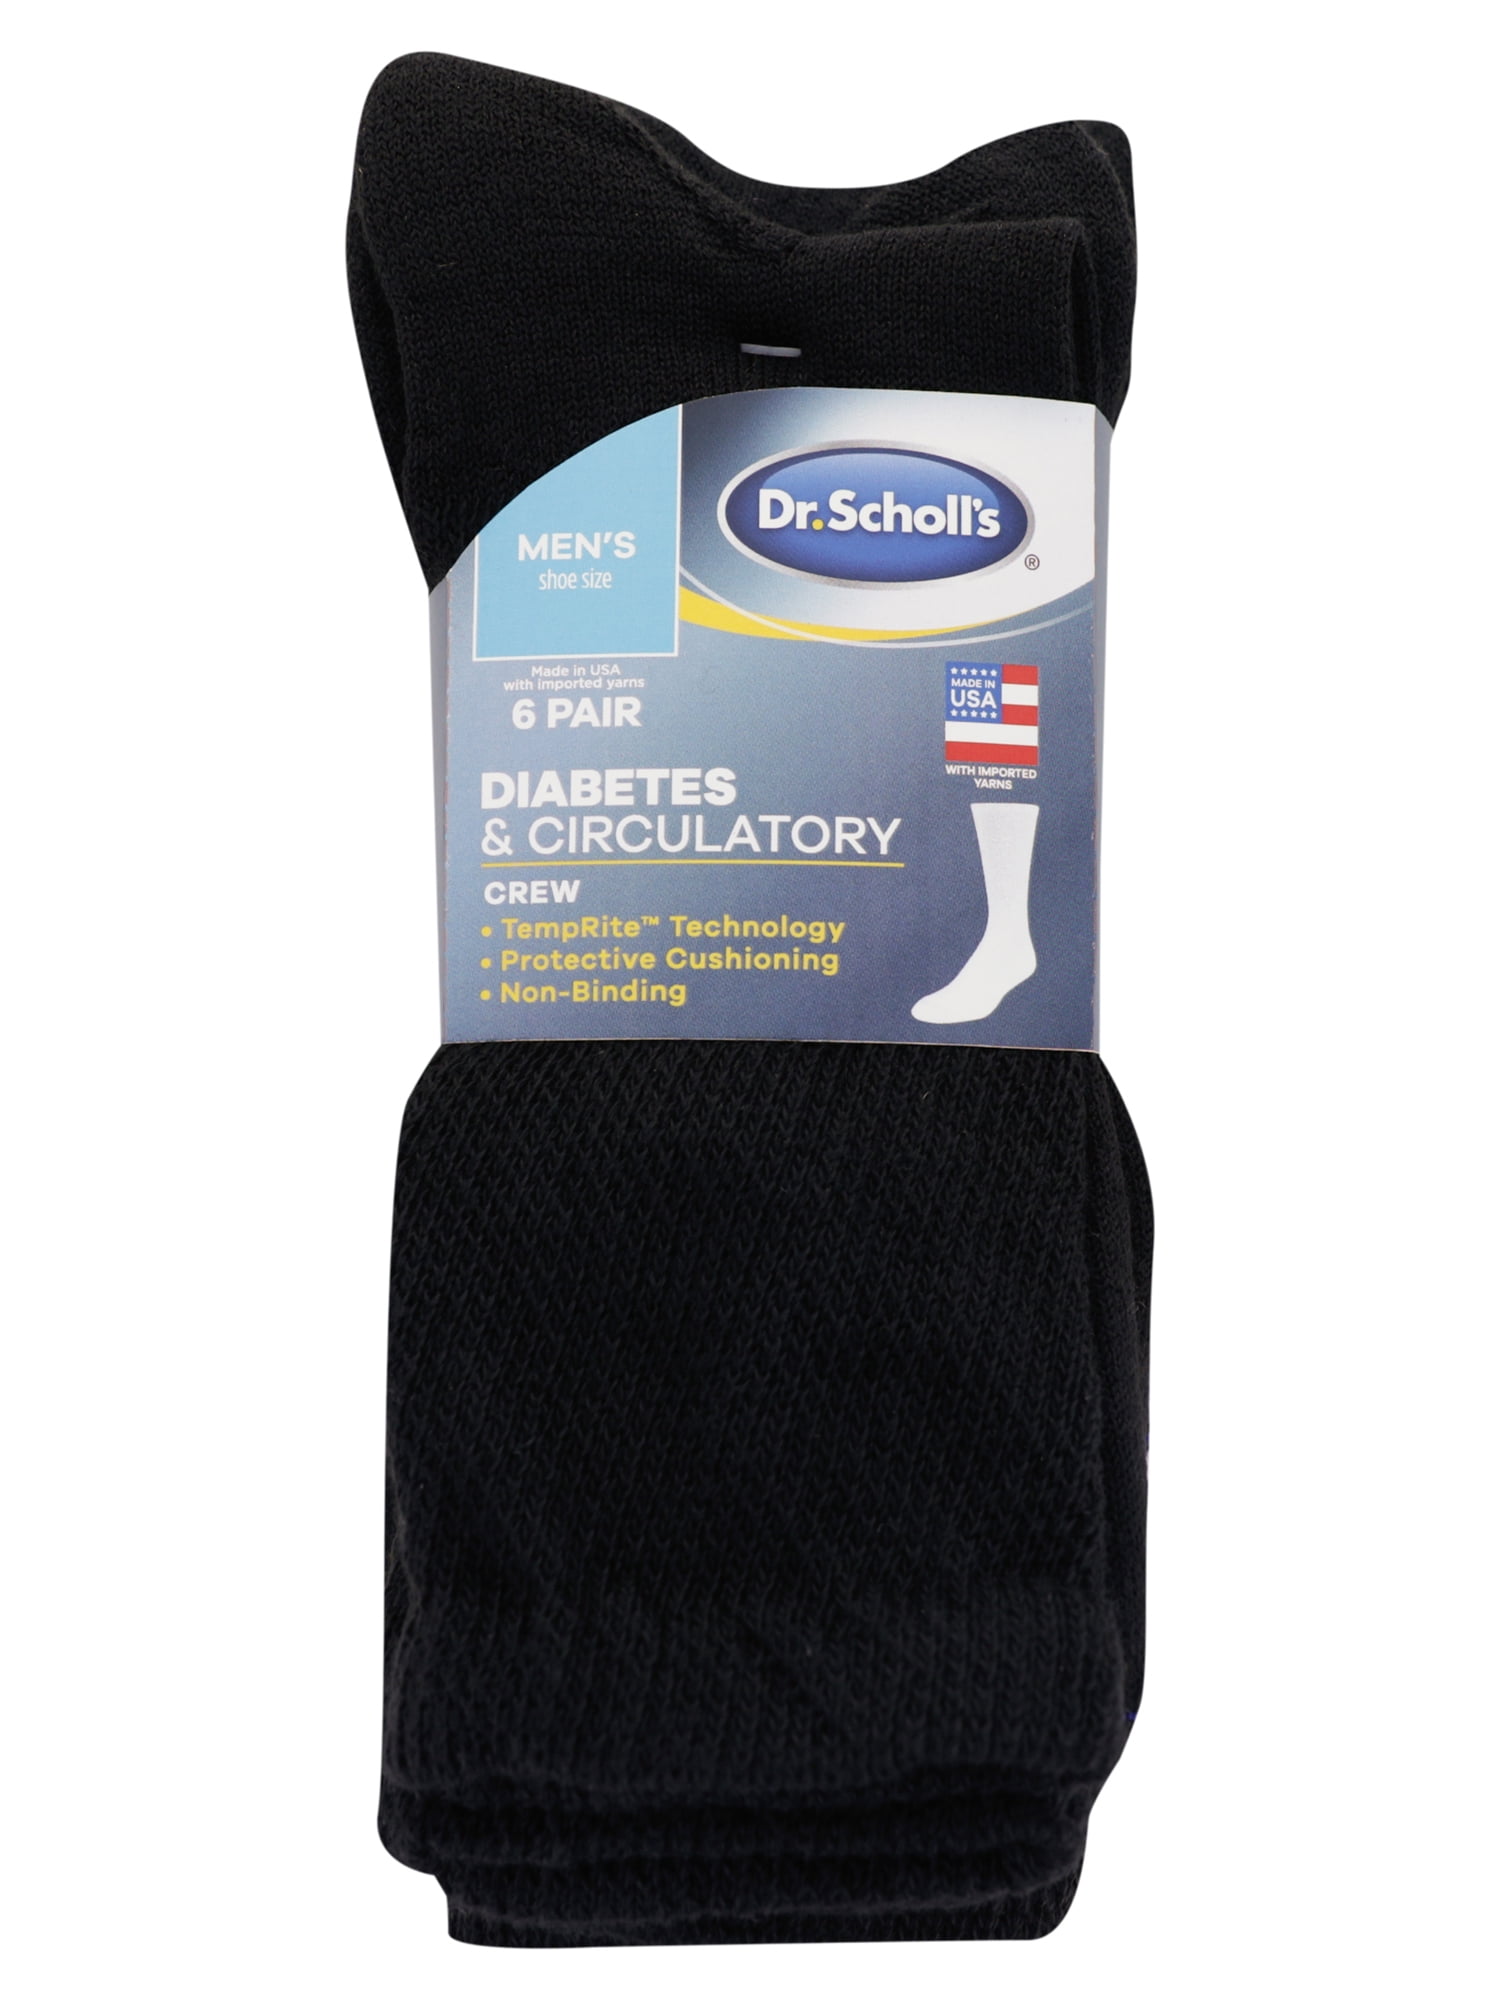 Dr. Scholl's Men's Diabetes & Circulatory Crew Socks, 6 Pack